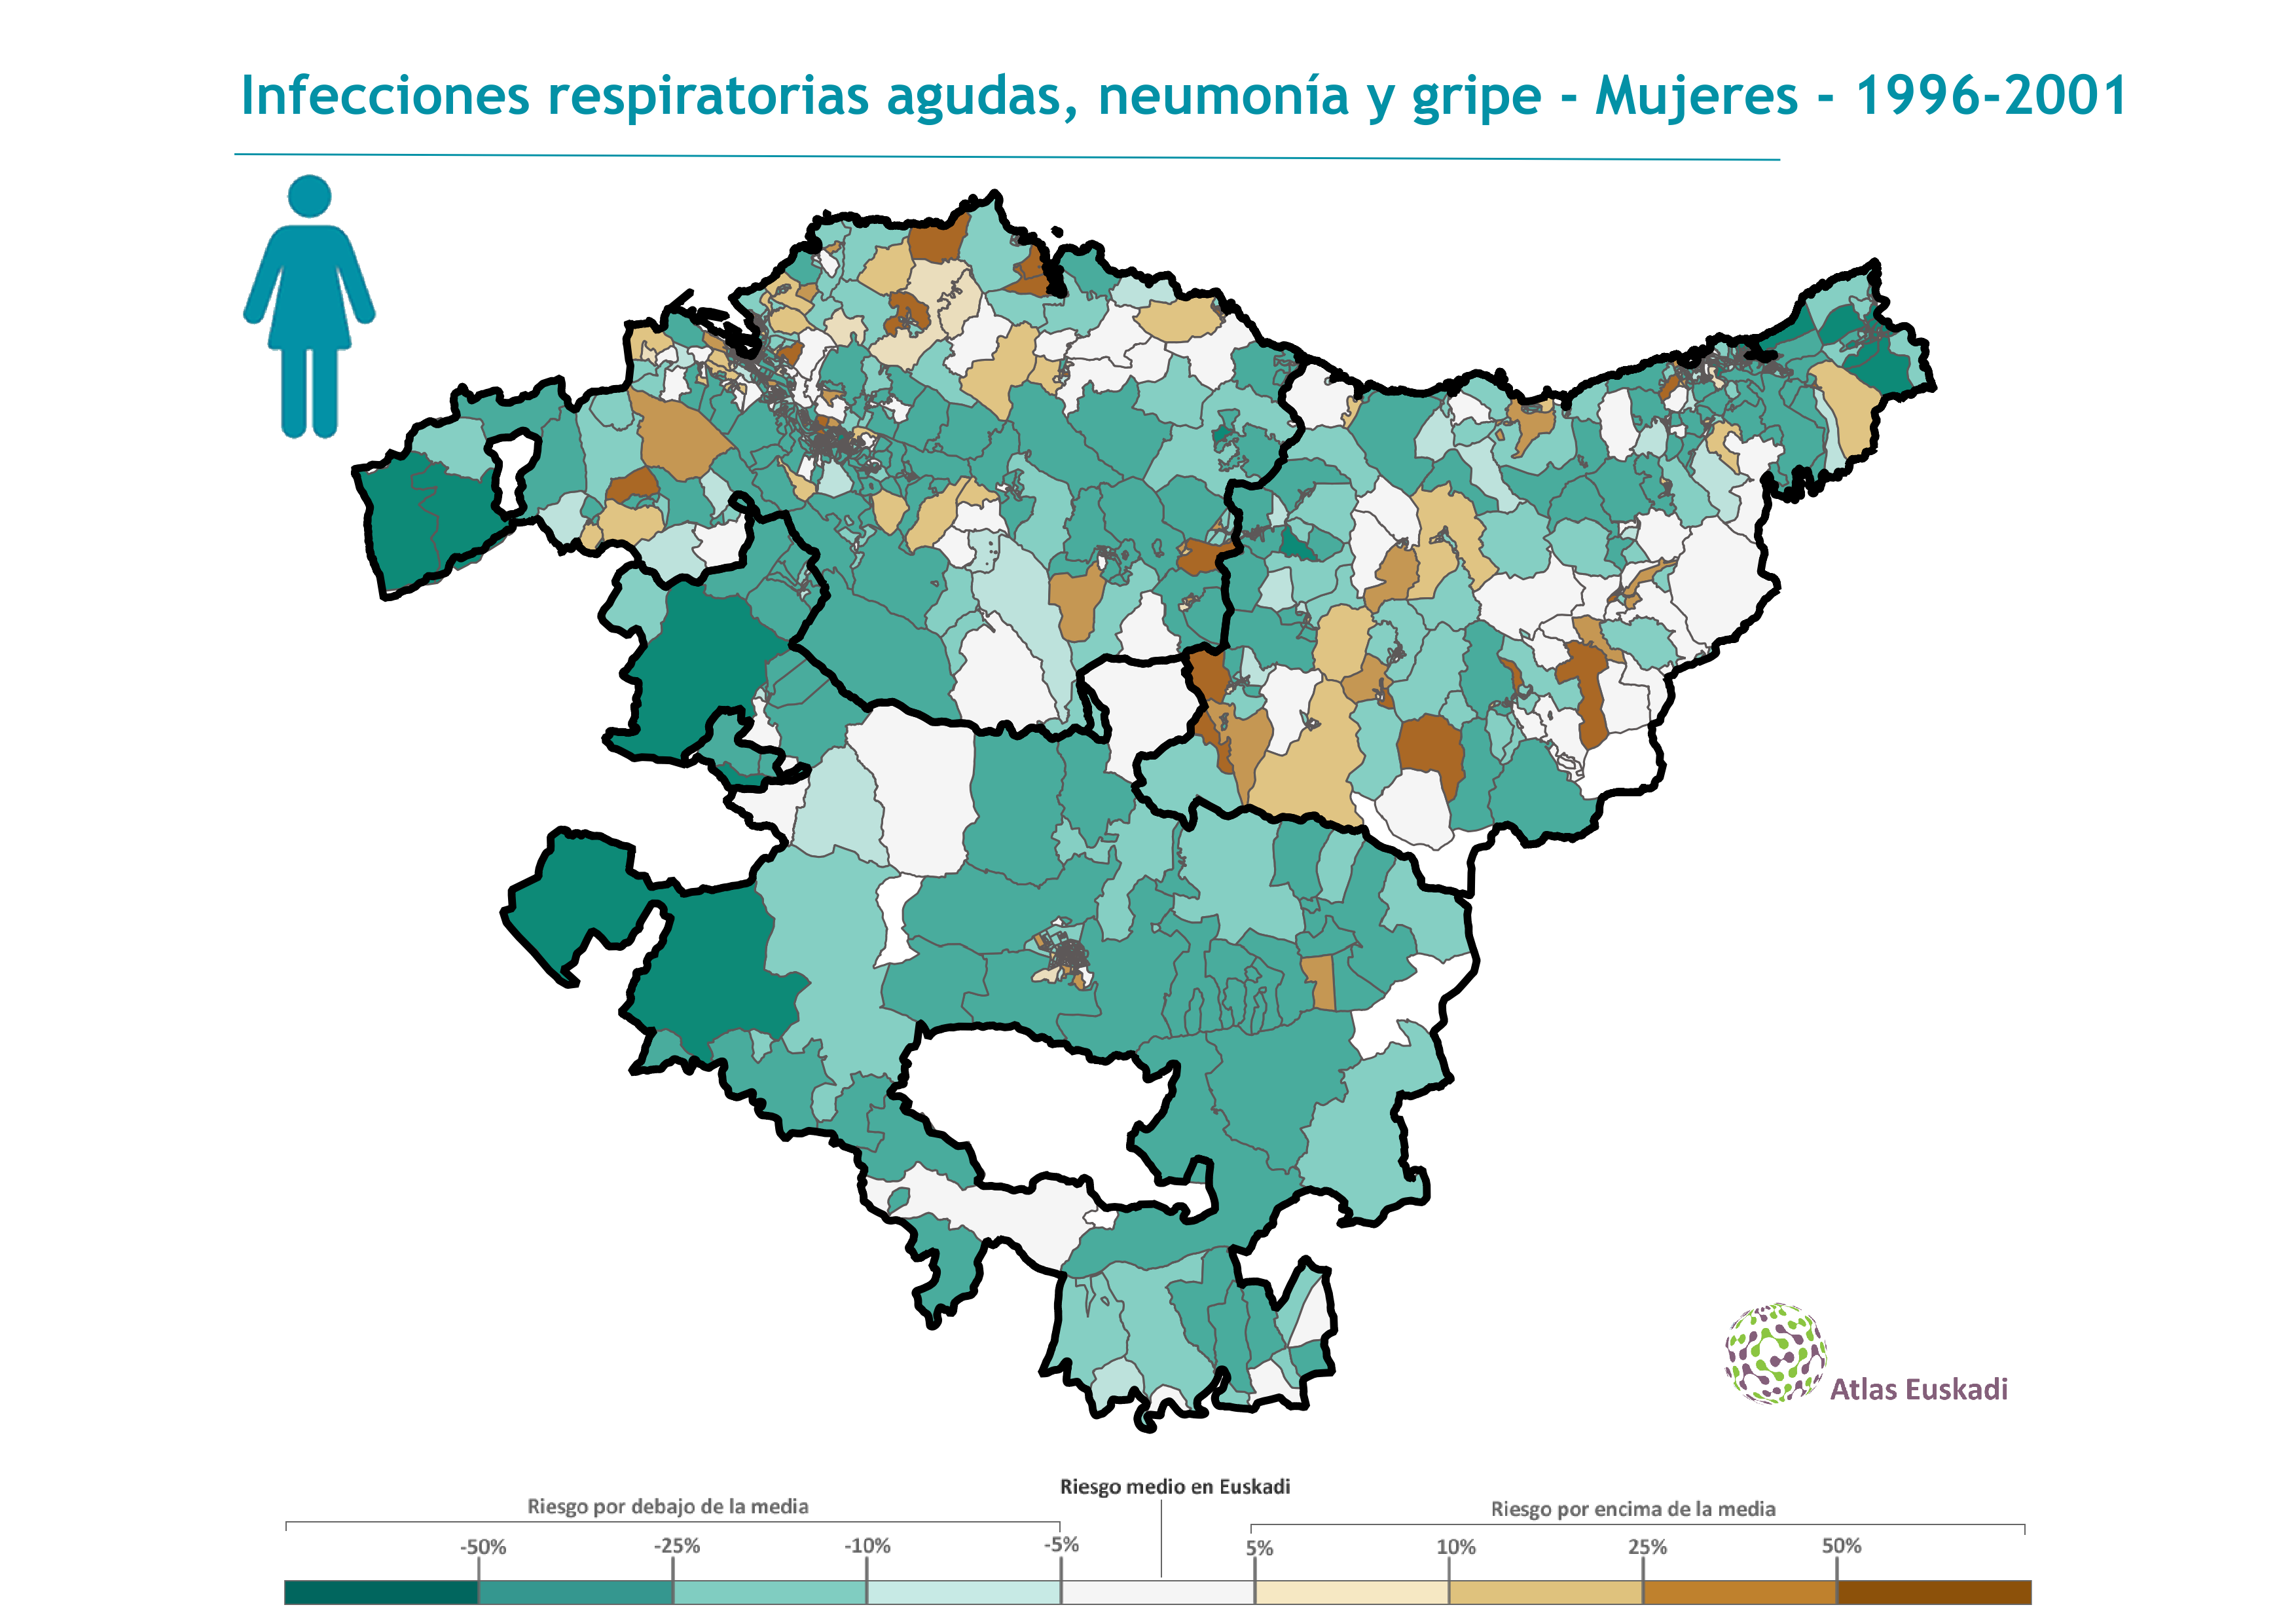 Infecciones respiratorias agudas, neumonía y gripe mujeres  1996-2001 Euskadi